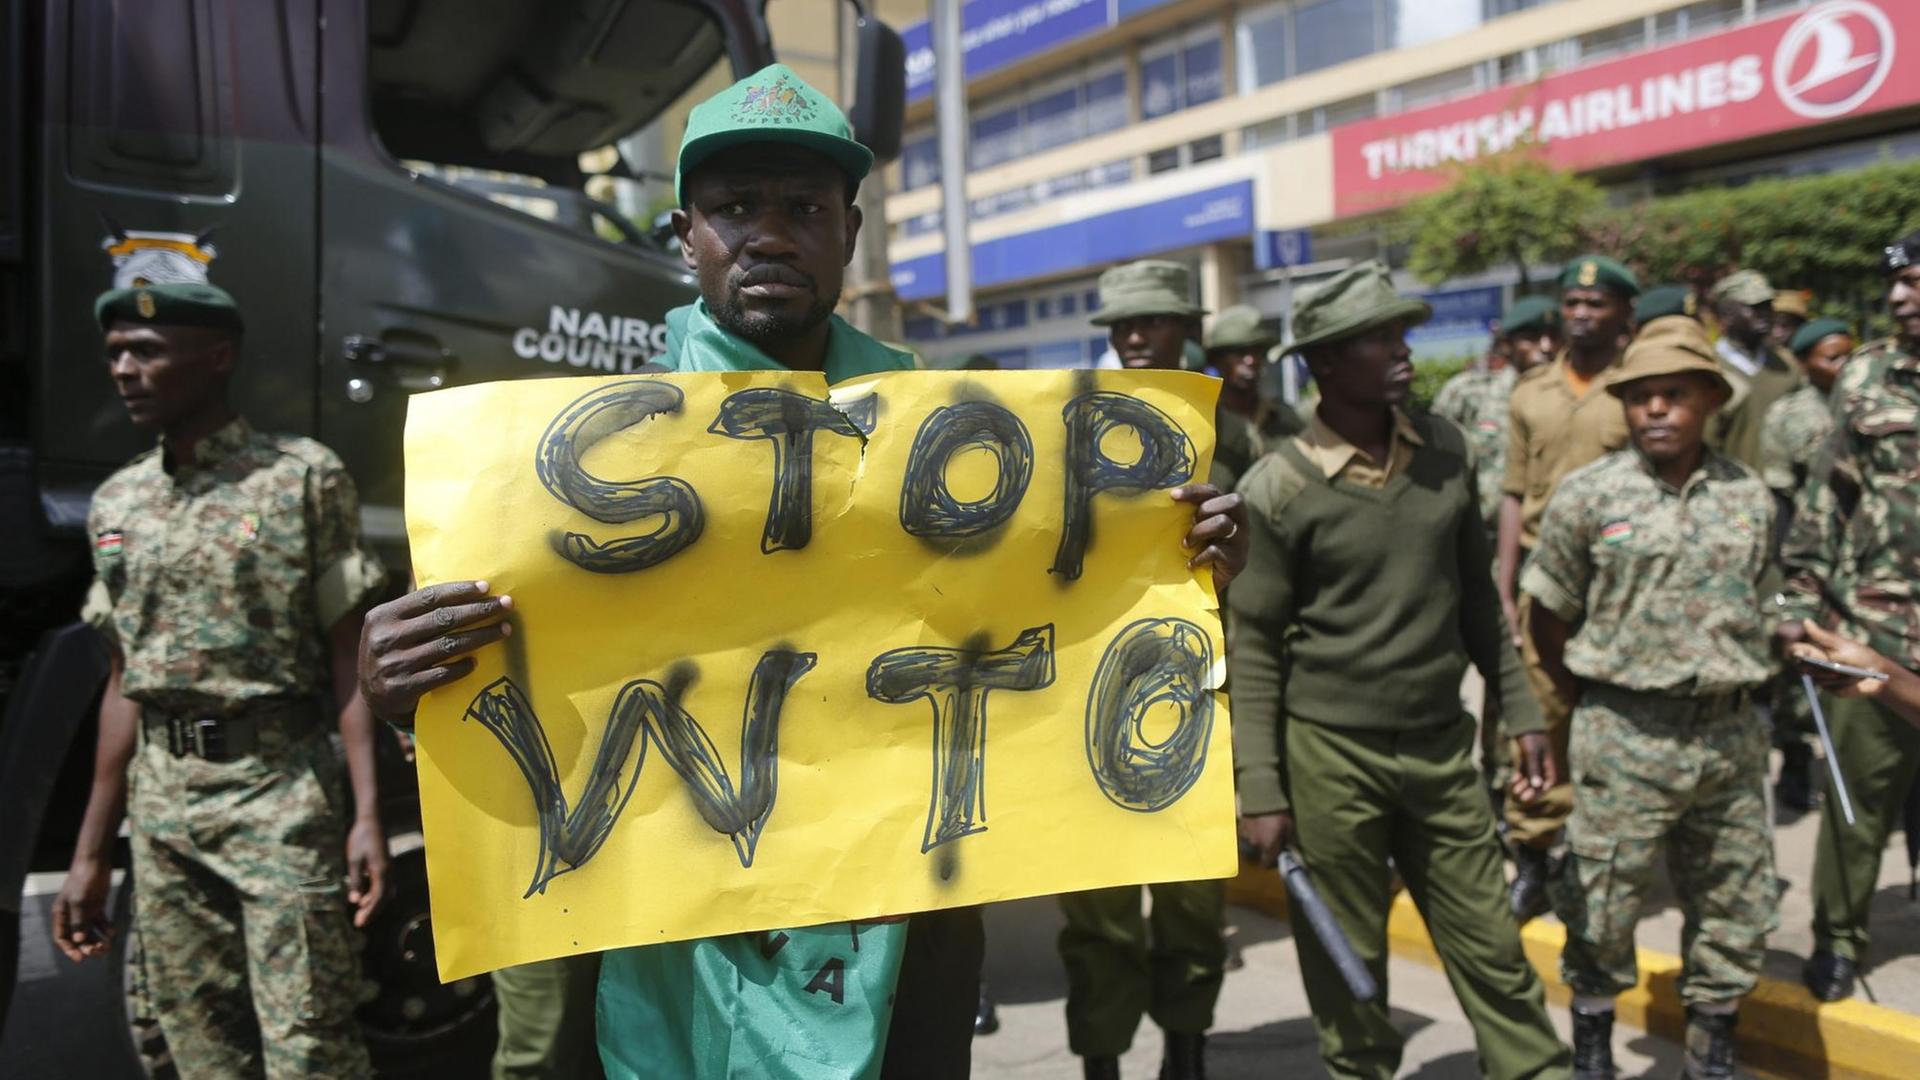 Ein kenianischer Aktivist hält ein Transparent hoch, auf dem "Stop WTO" zu lesen ist. Um ihn herum stehen Sicherheitsleute.